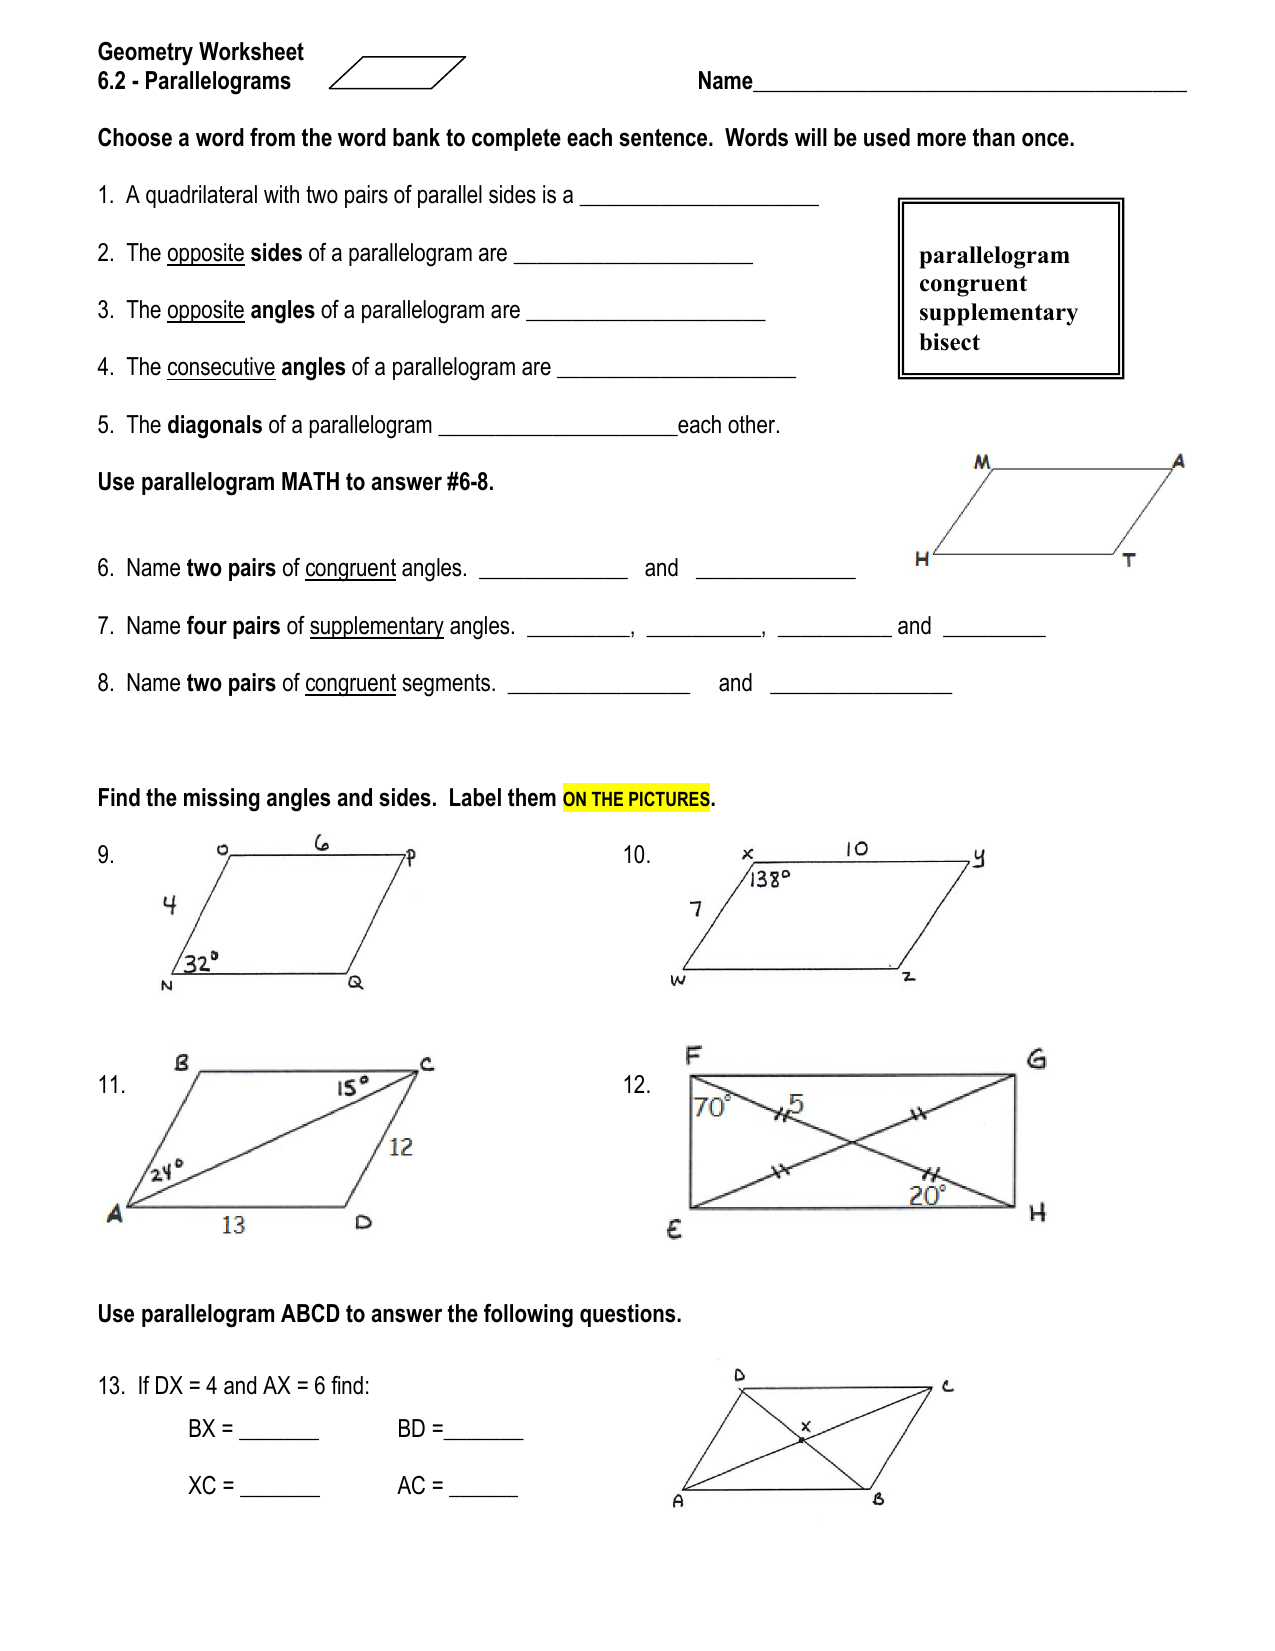 geometry-worksheet-62-db-excel